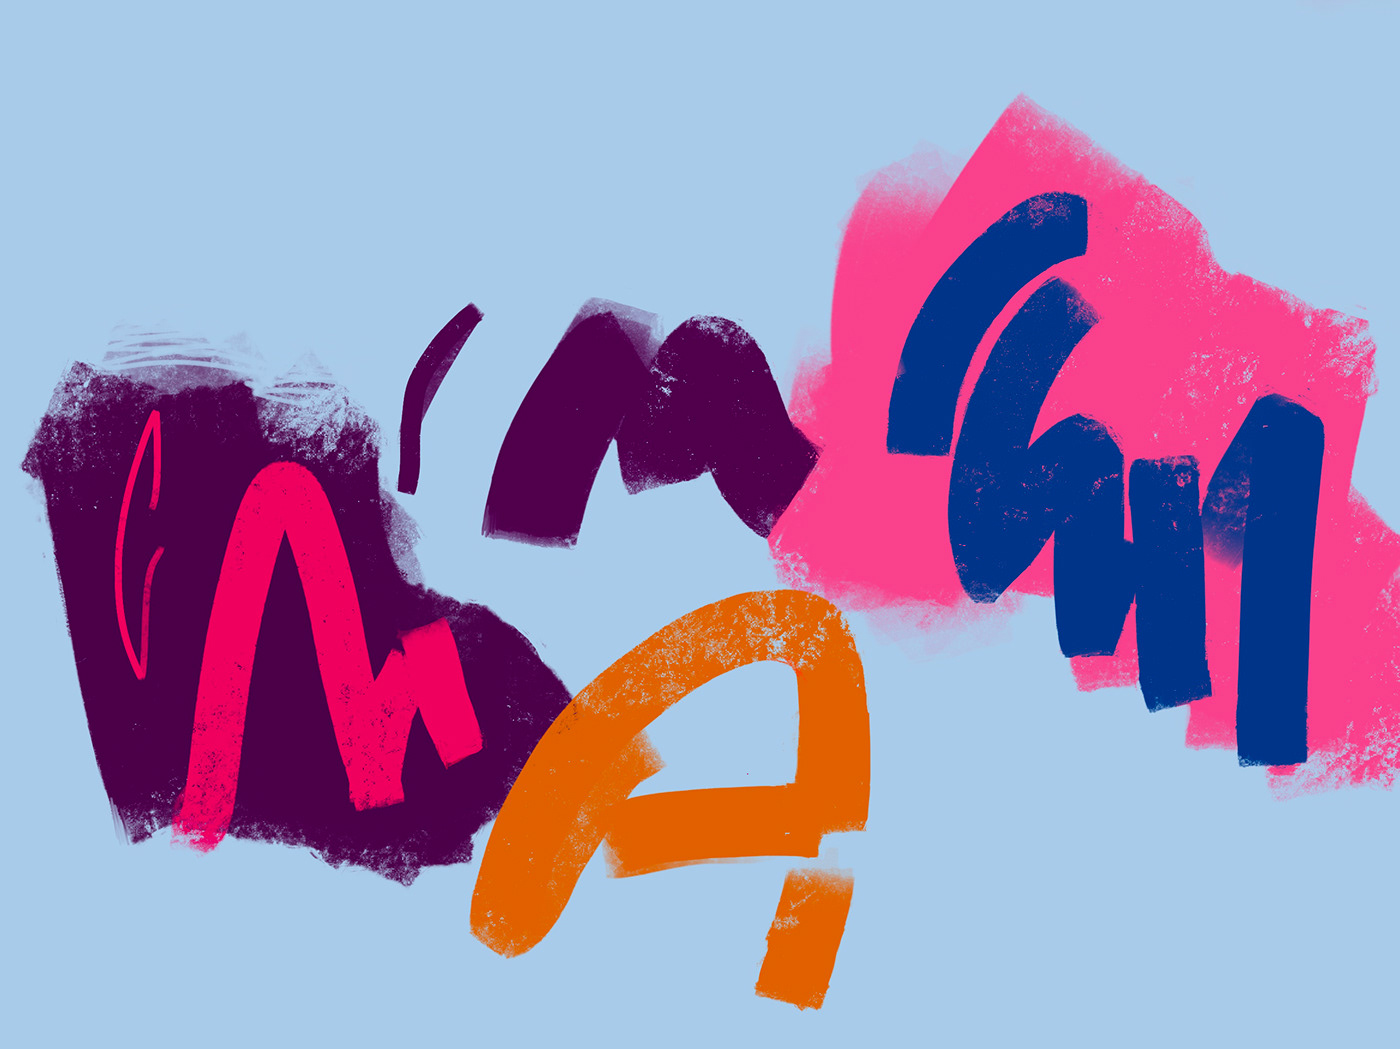 abstract cursive scrawl sketch